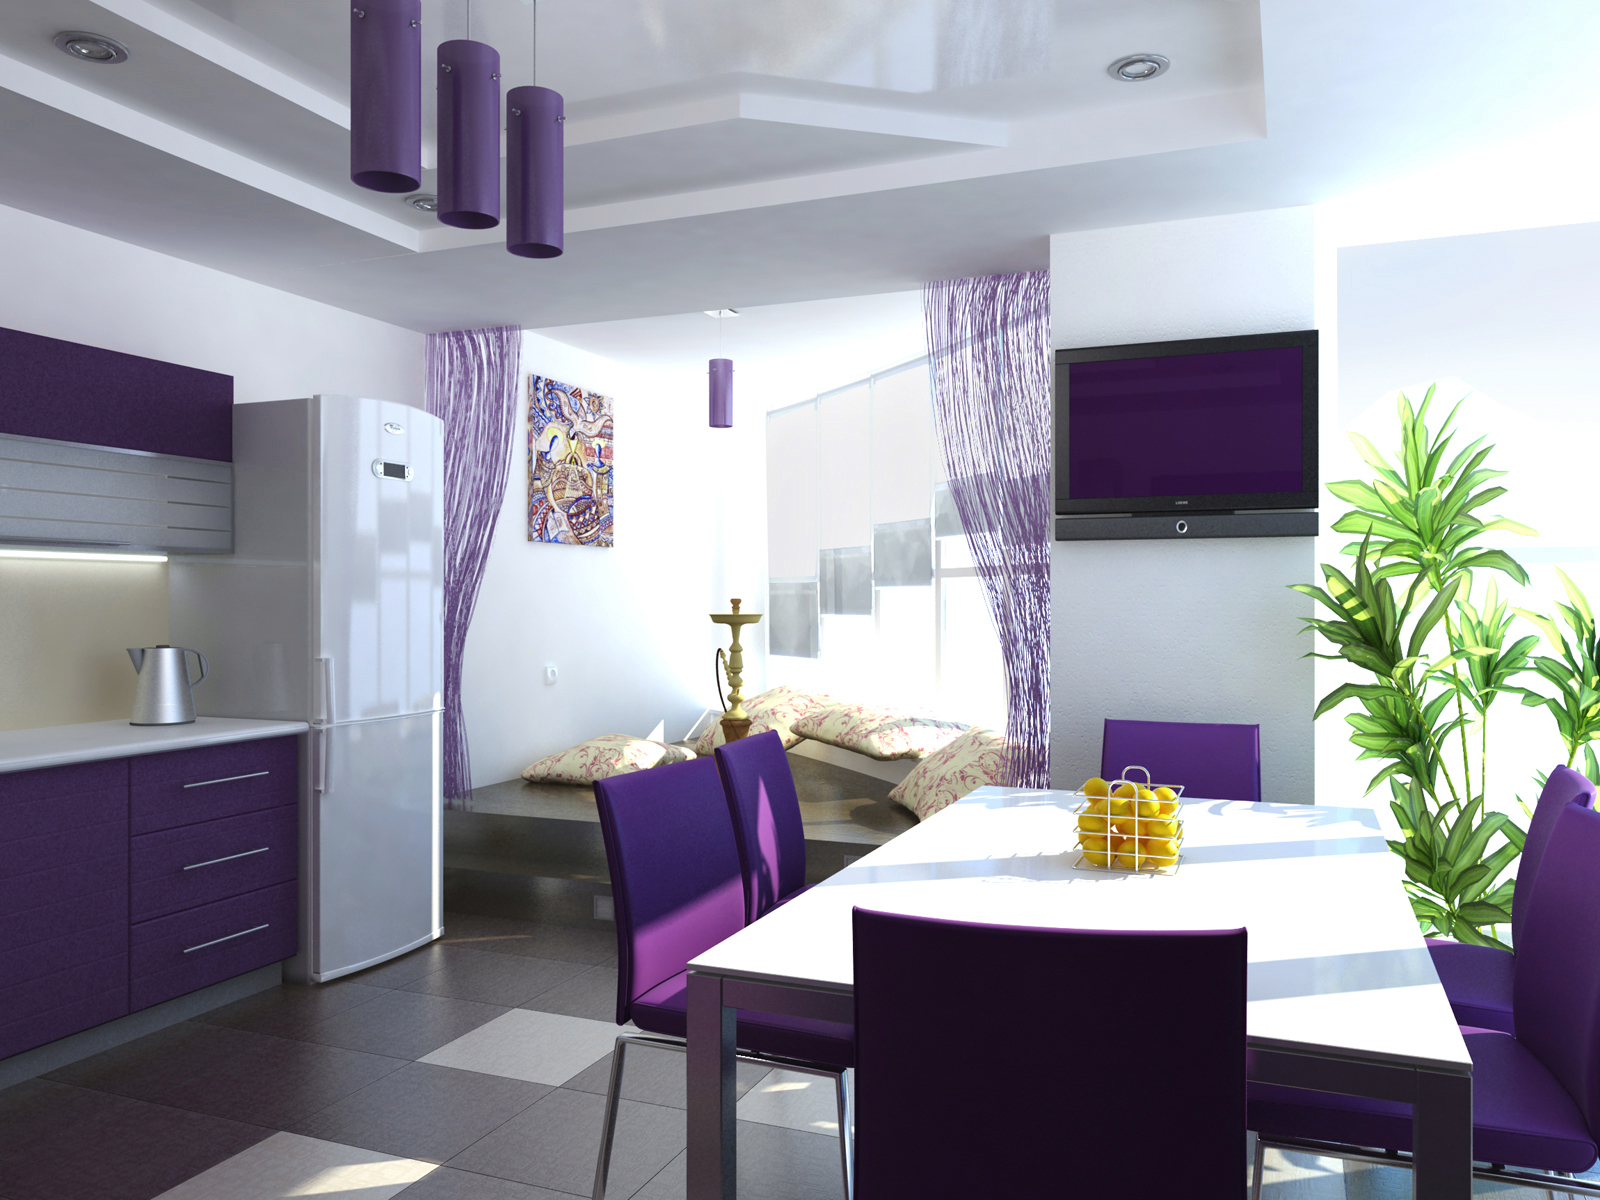 Chaises violettes dans la cuisine